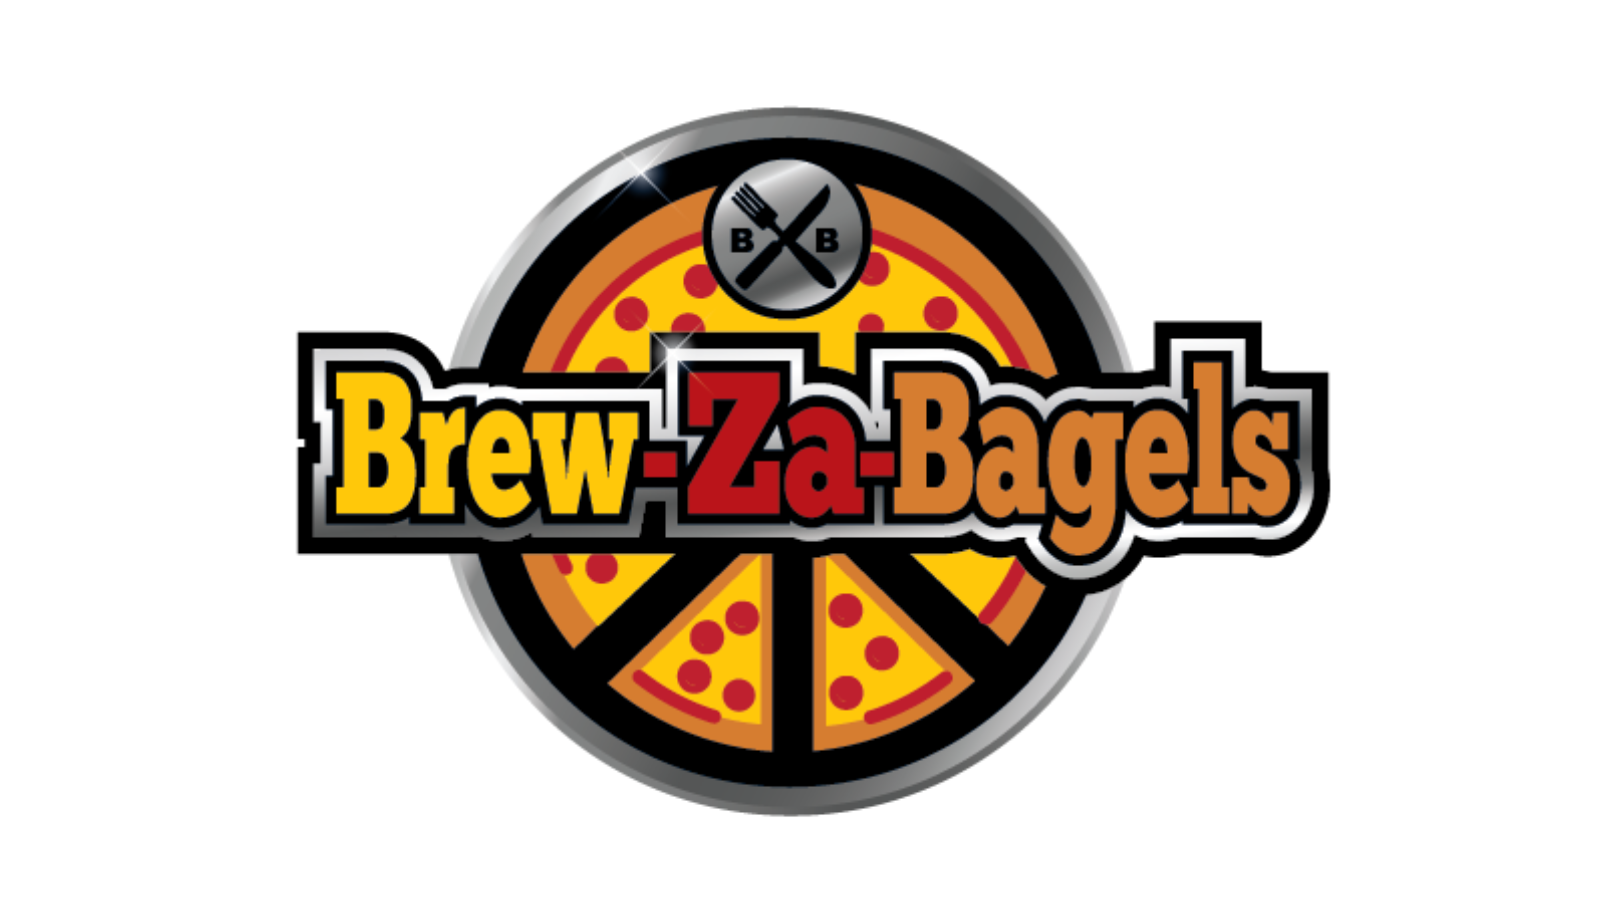 Brew-Za-Bagels